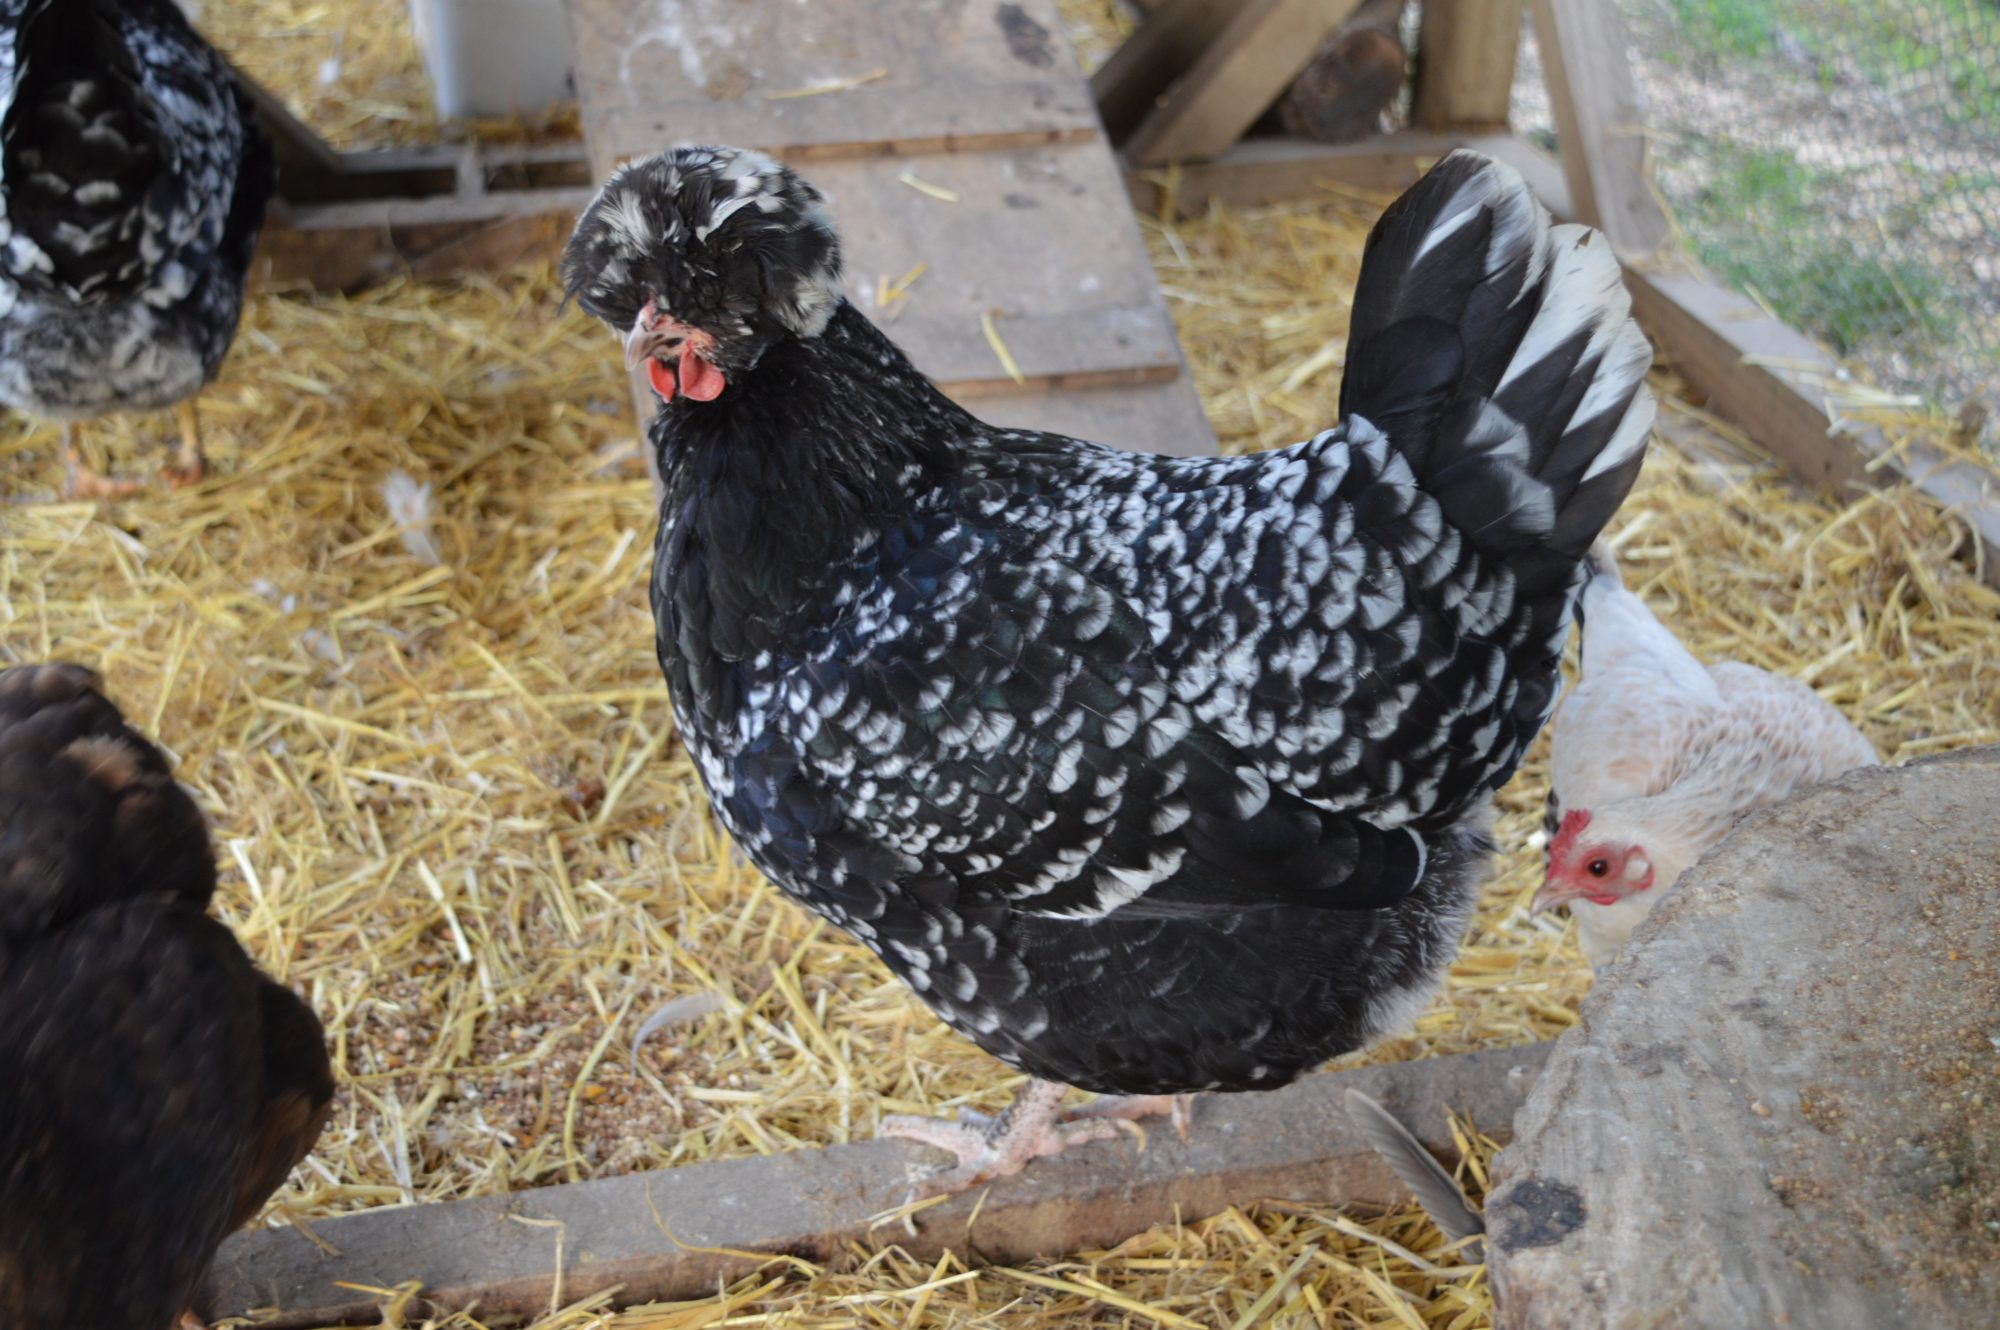 Чешский доминант - яичная порода кур. Характеристики, особенности разведения и кормления кросса, инкубация